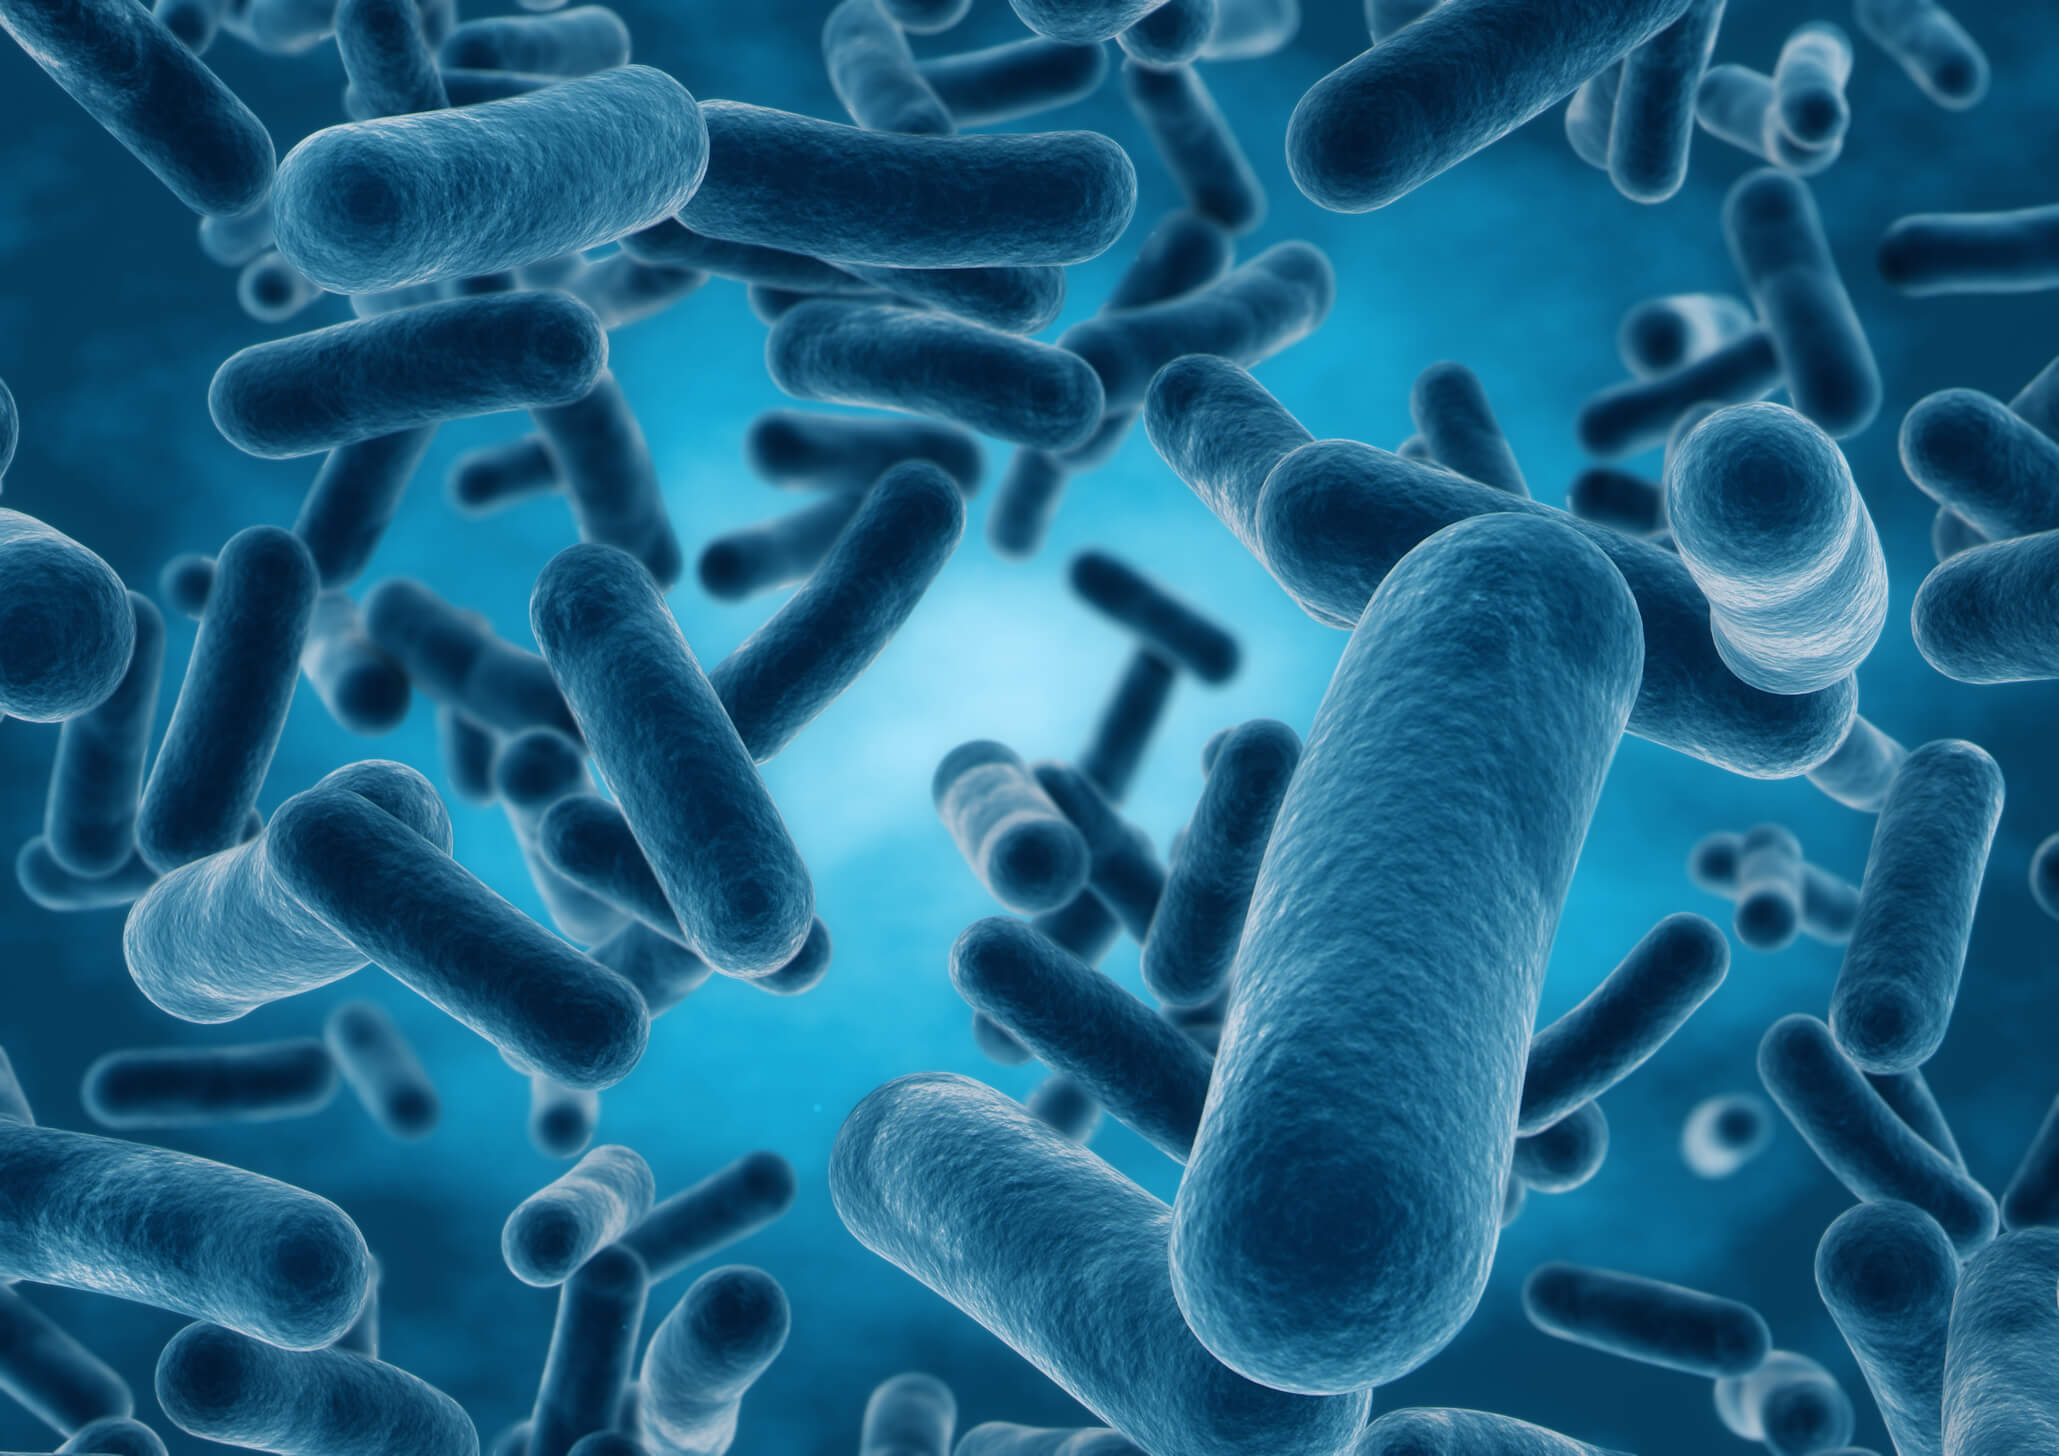 Come i batteri nell'intestino possono influenzare la memoria?